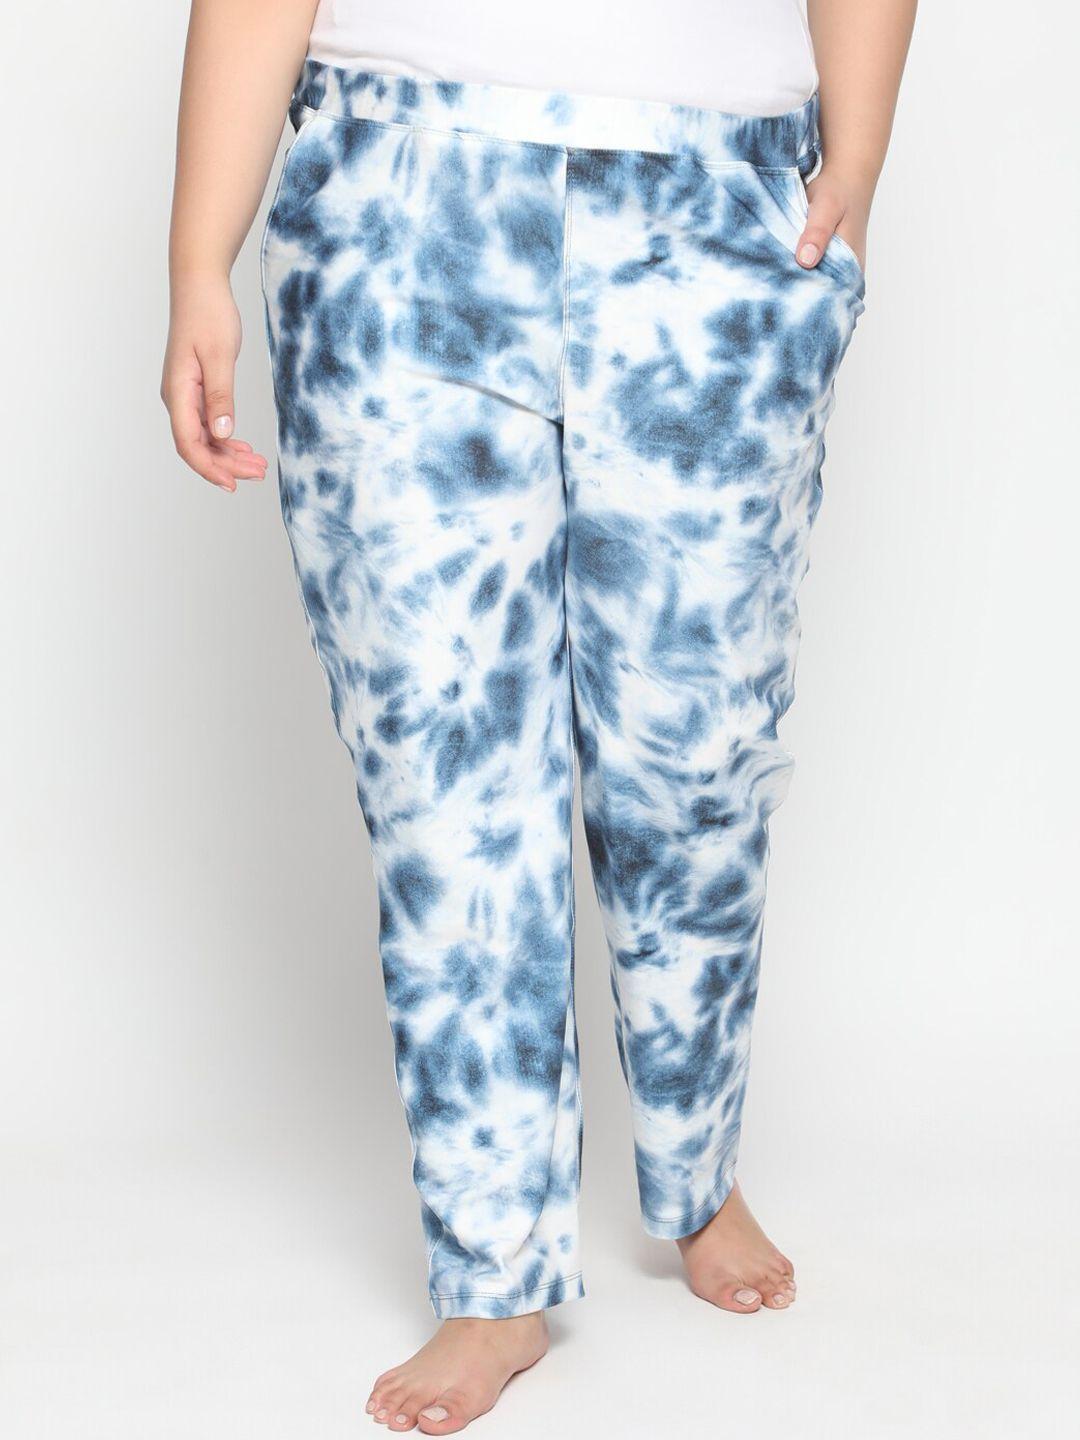 amydus women plus size blue & white tie dye printed lounge pants